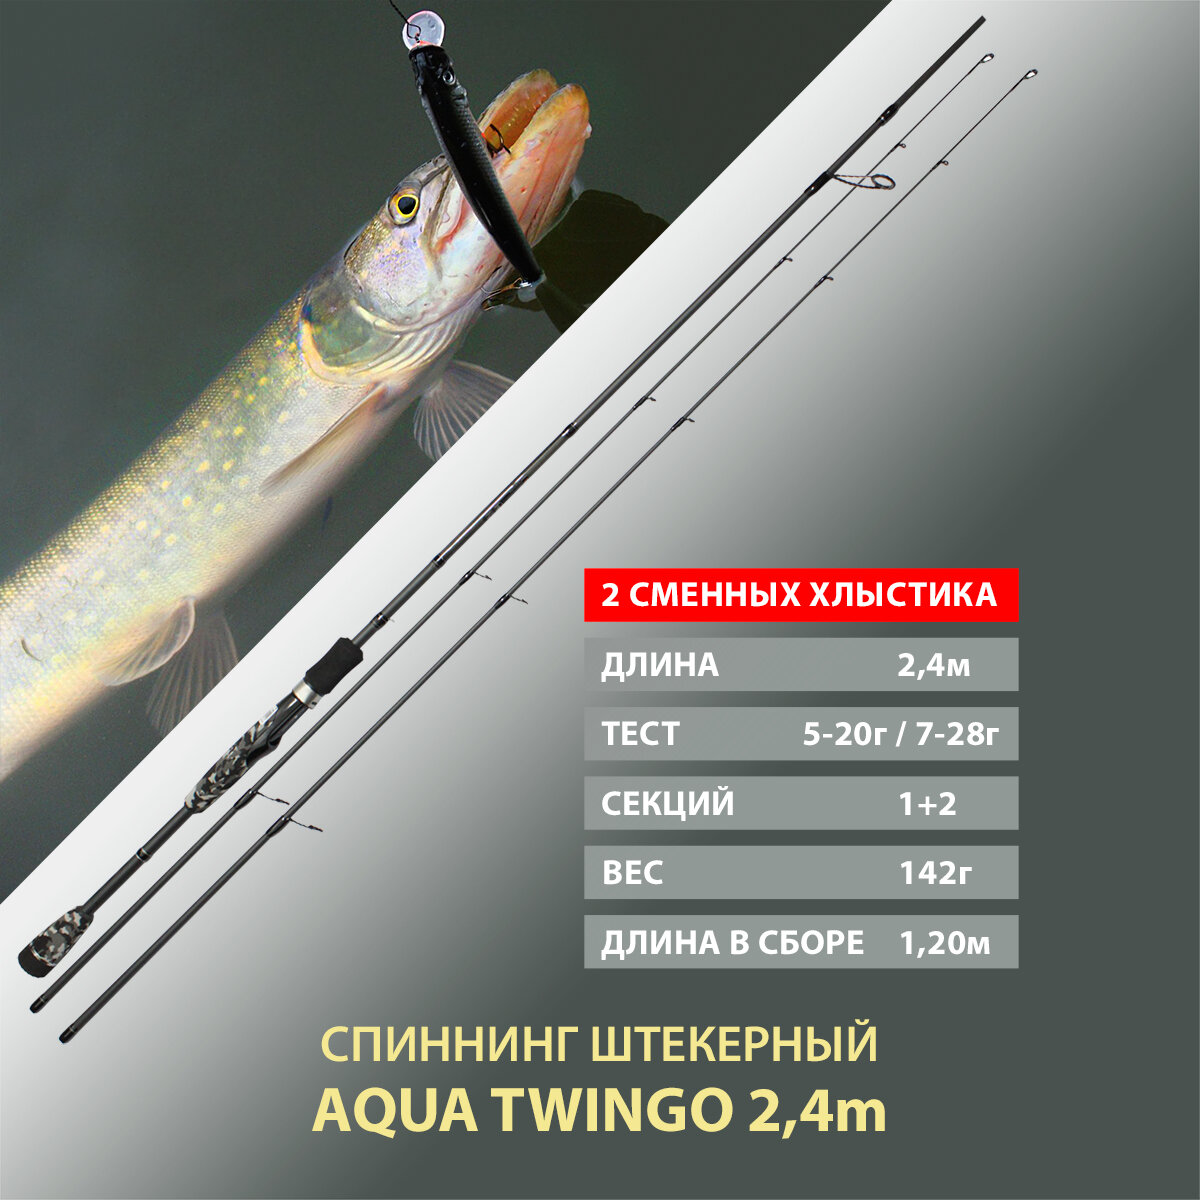 Спиннинг штекерный, с двумя хлыстами AQUA Twingo 2.40m, тест 05-20g/07-28g